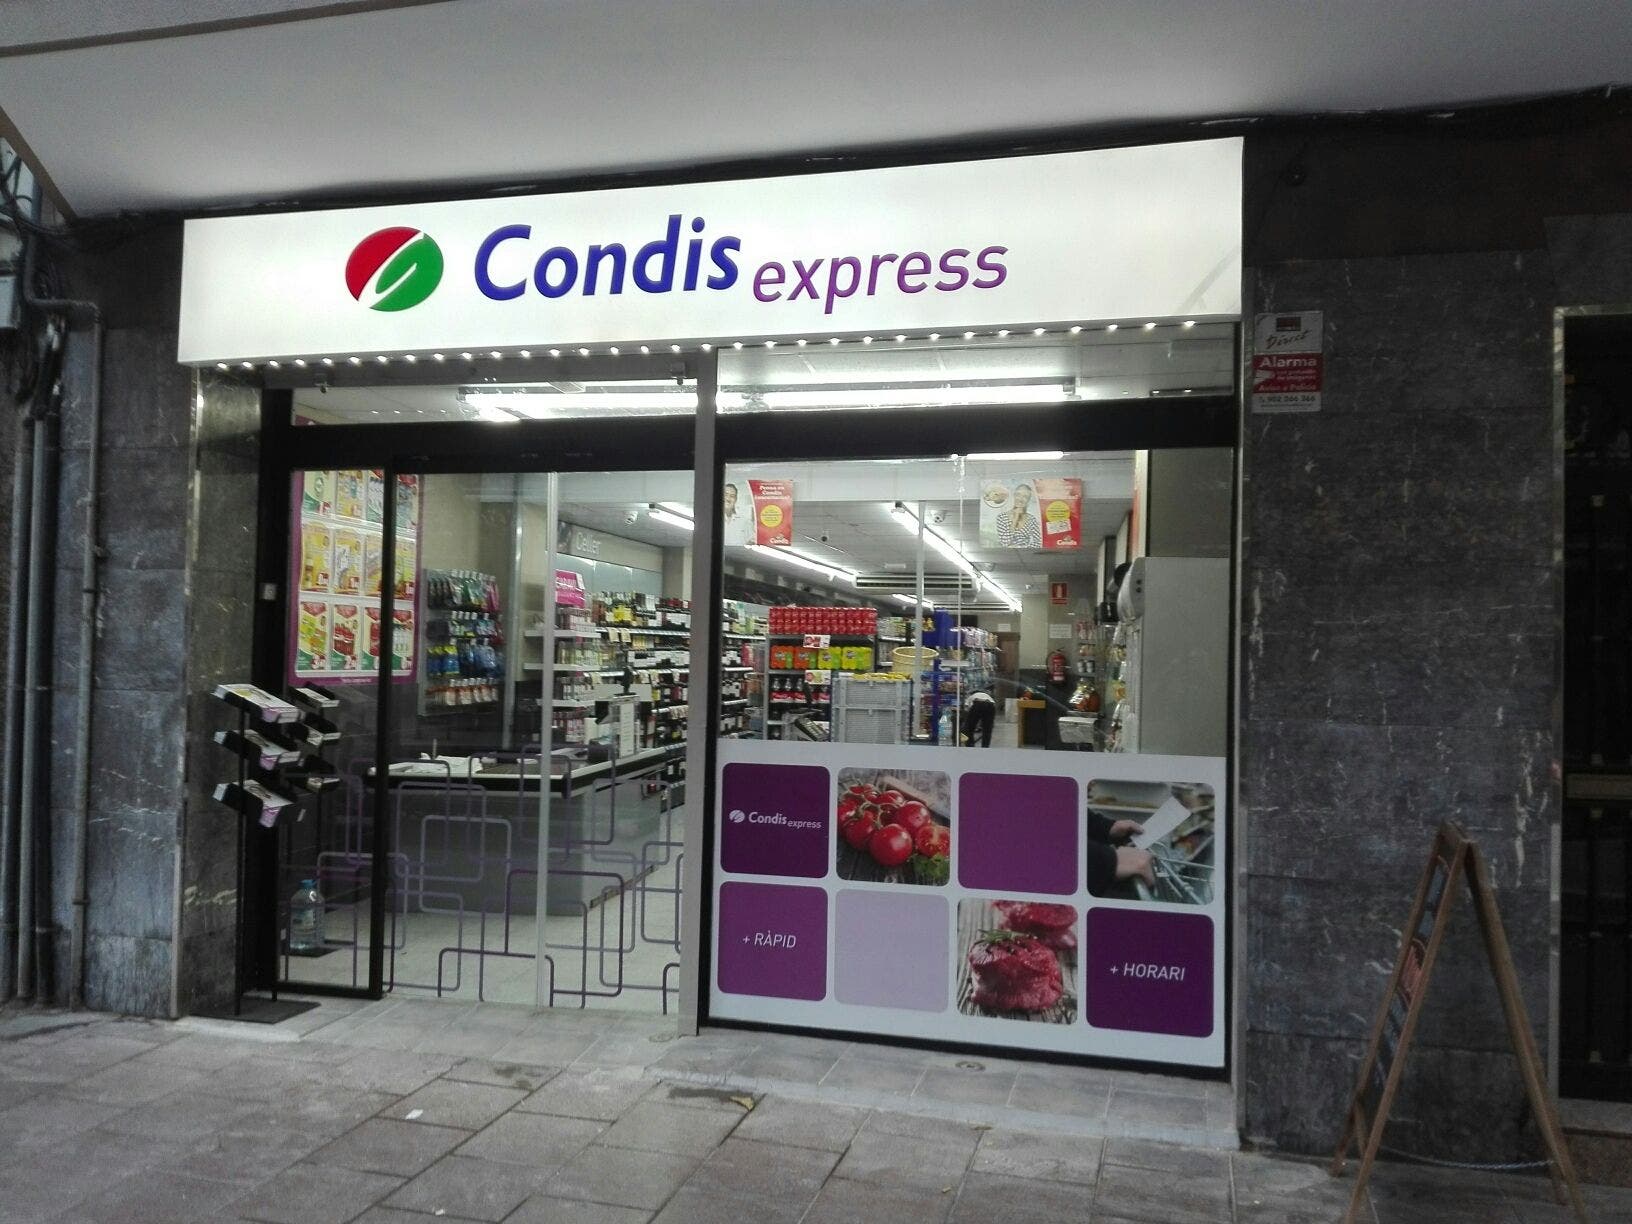 Un local de Condis Express, el gran argumento de la expansión de Condis.